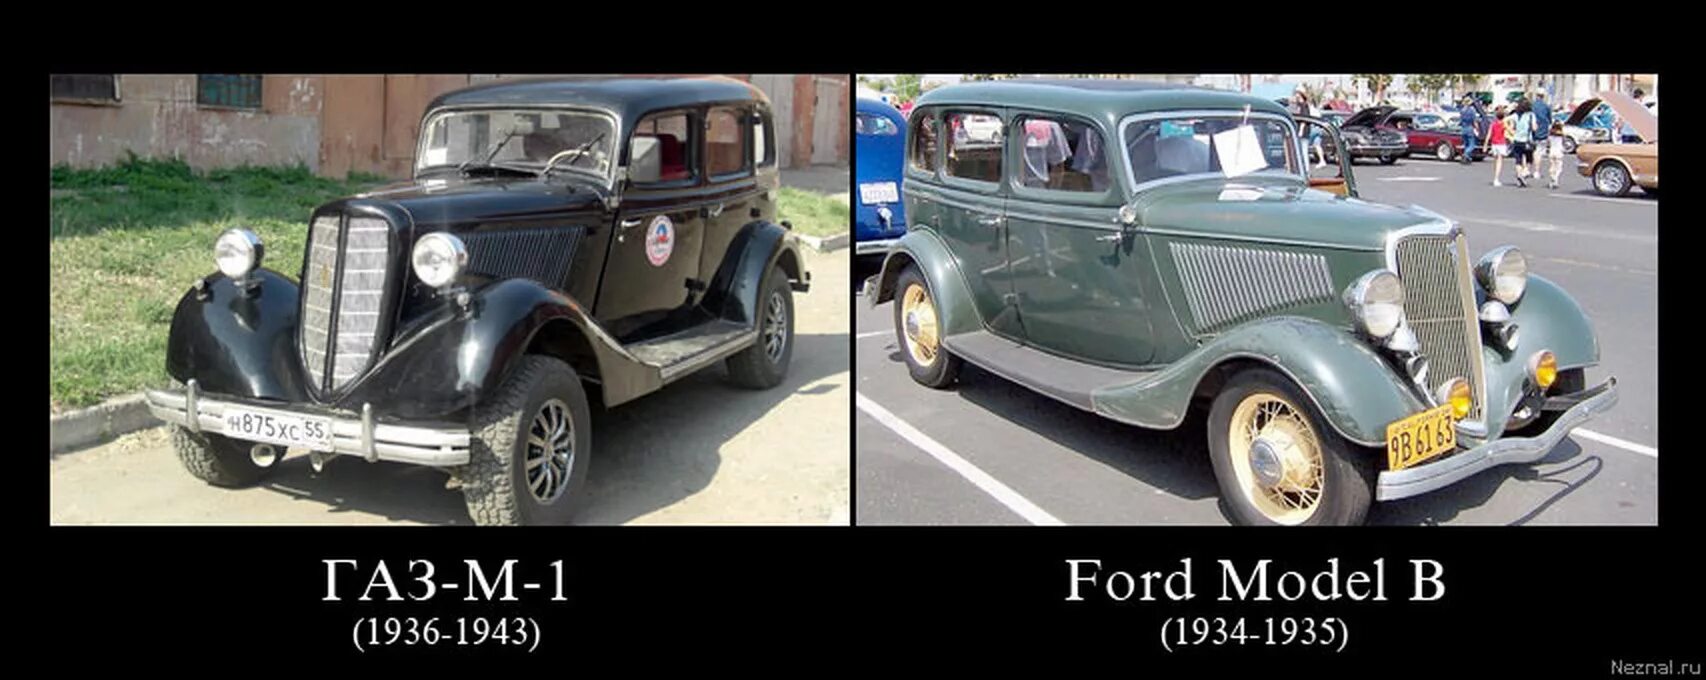 Скопированный газ. Автомобиль ГАЗ М 1 И Форд. ГАЗ м1 СССР. Ford model b 1934. ГАЗ м1 сравнить с Форд 40.